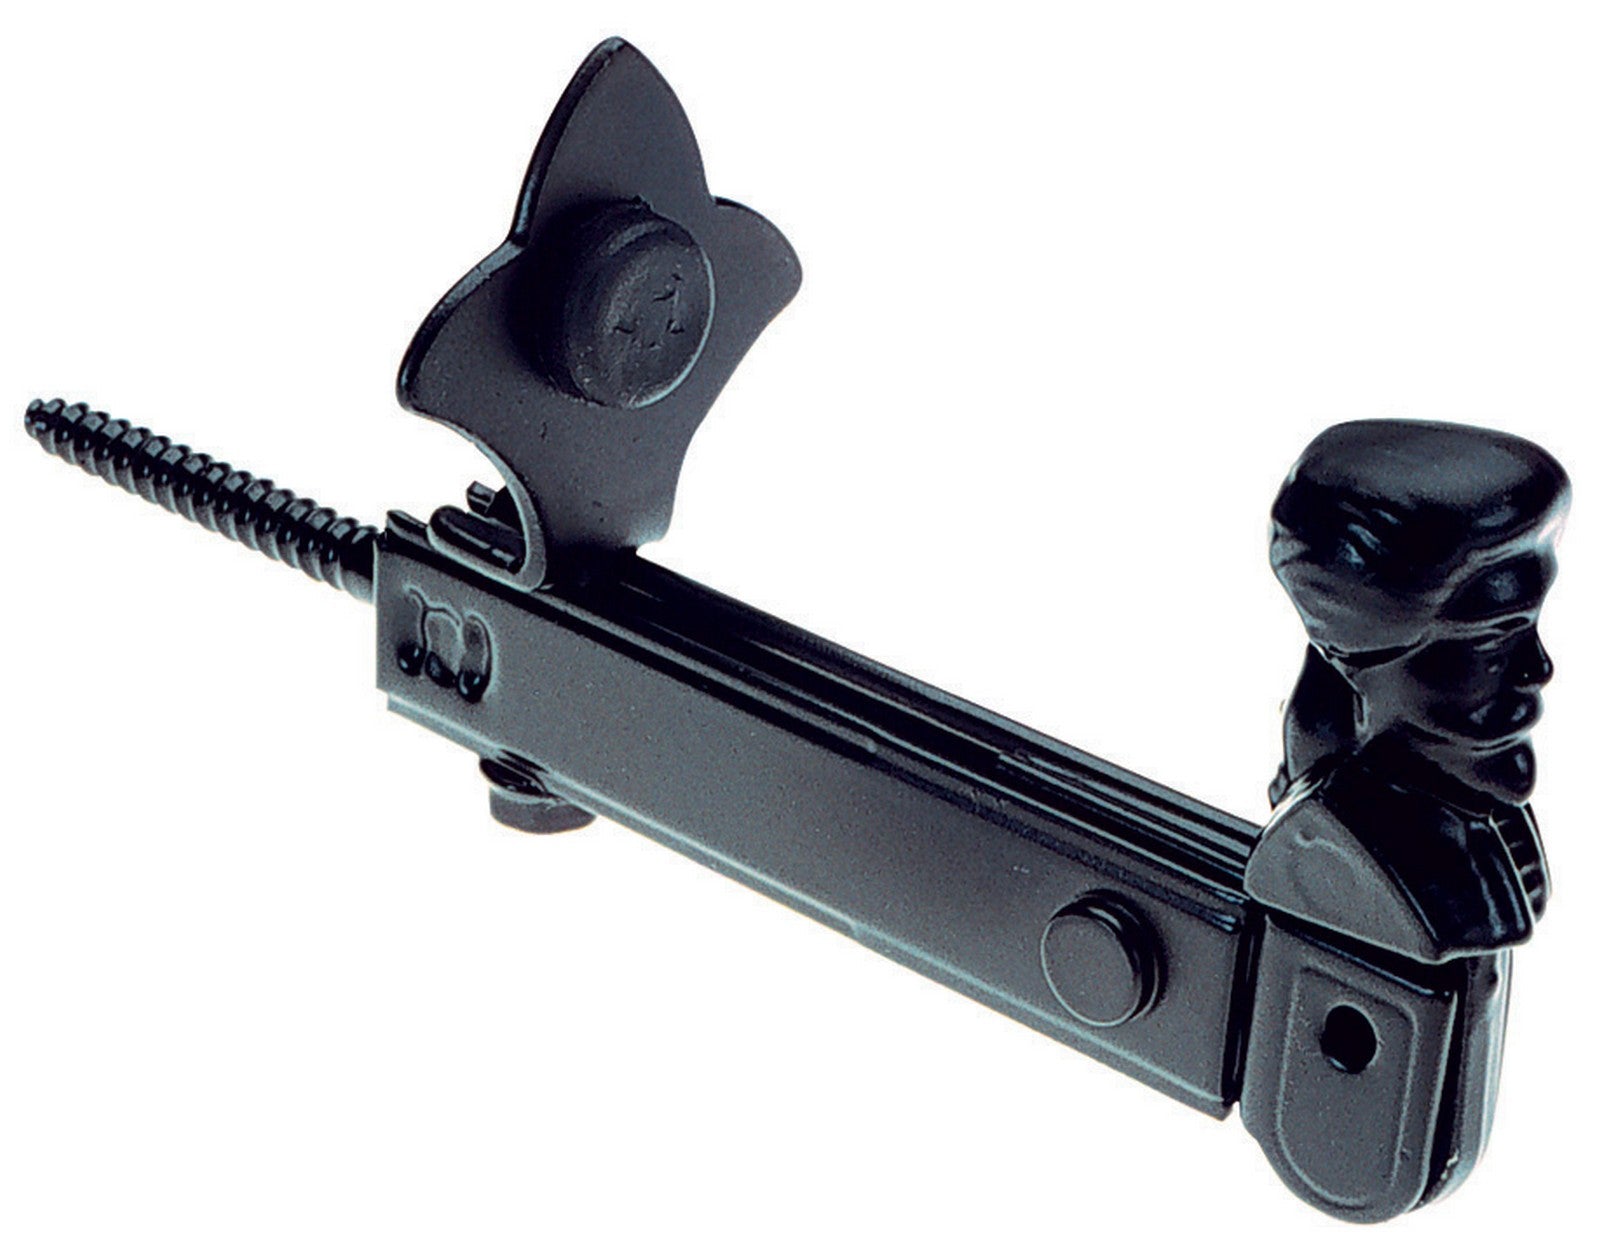 40pz fermaimposte nero registrabile mm 25/60 fissaggio con vite cod:ferx.2228